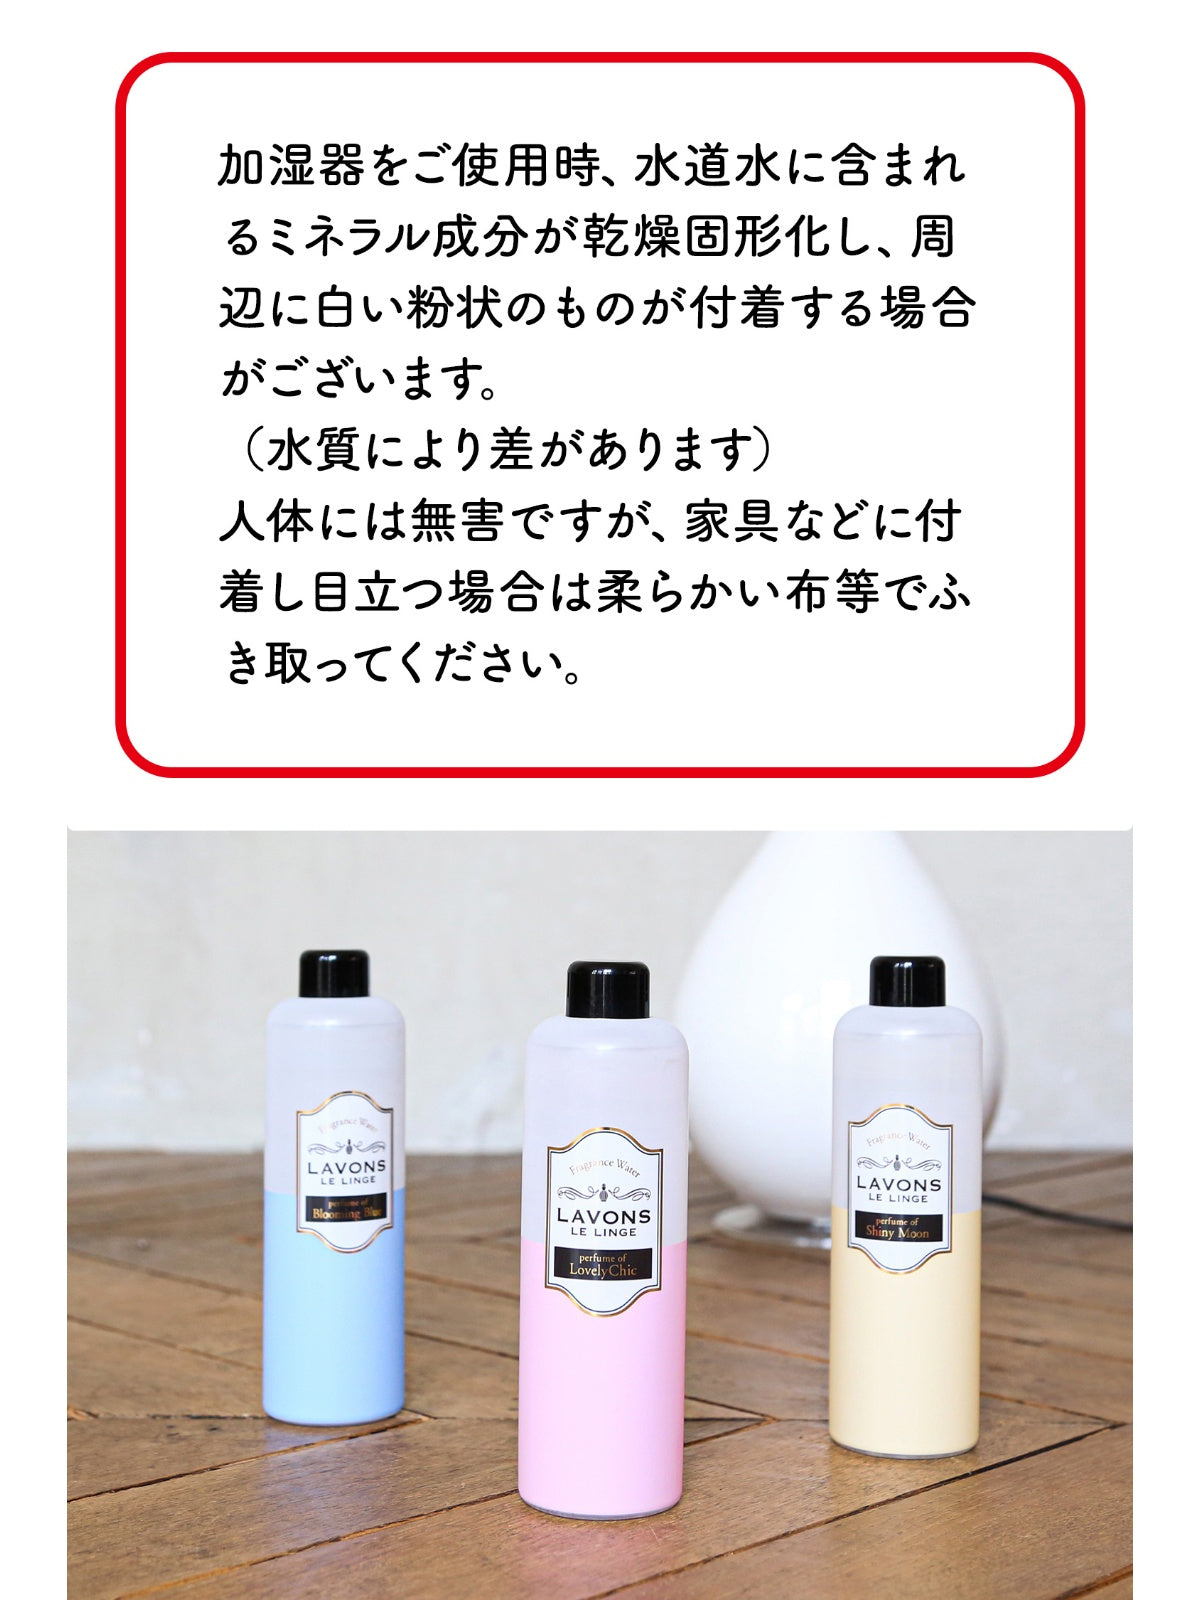 日本に LAVONS 加湿器用フレグランス - 日用品/生活雑貨/旅行